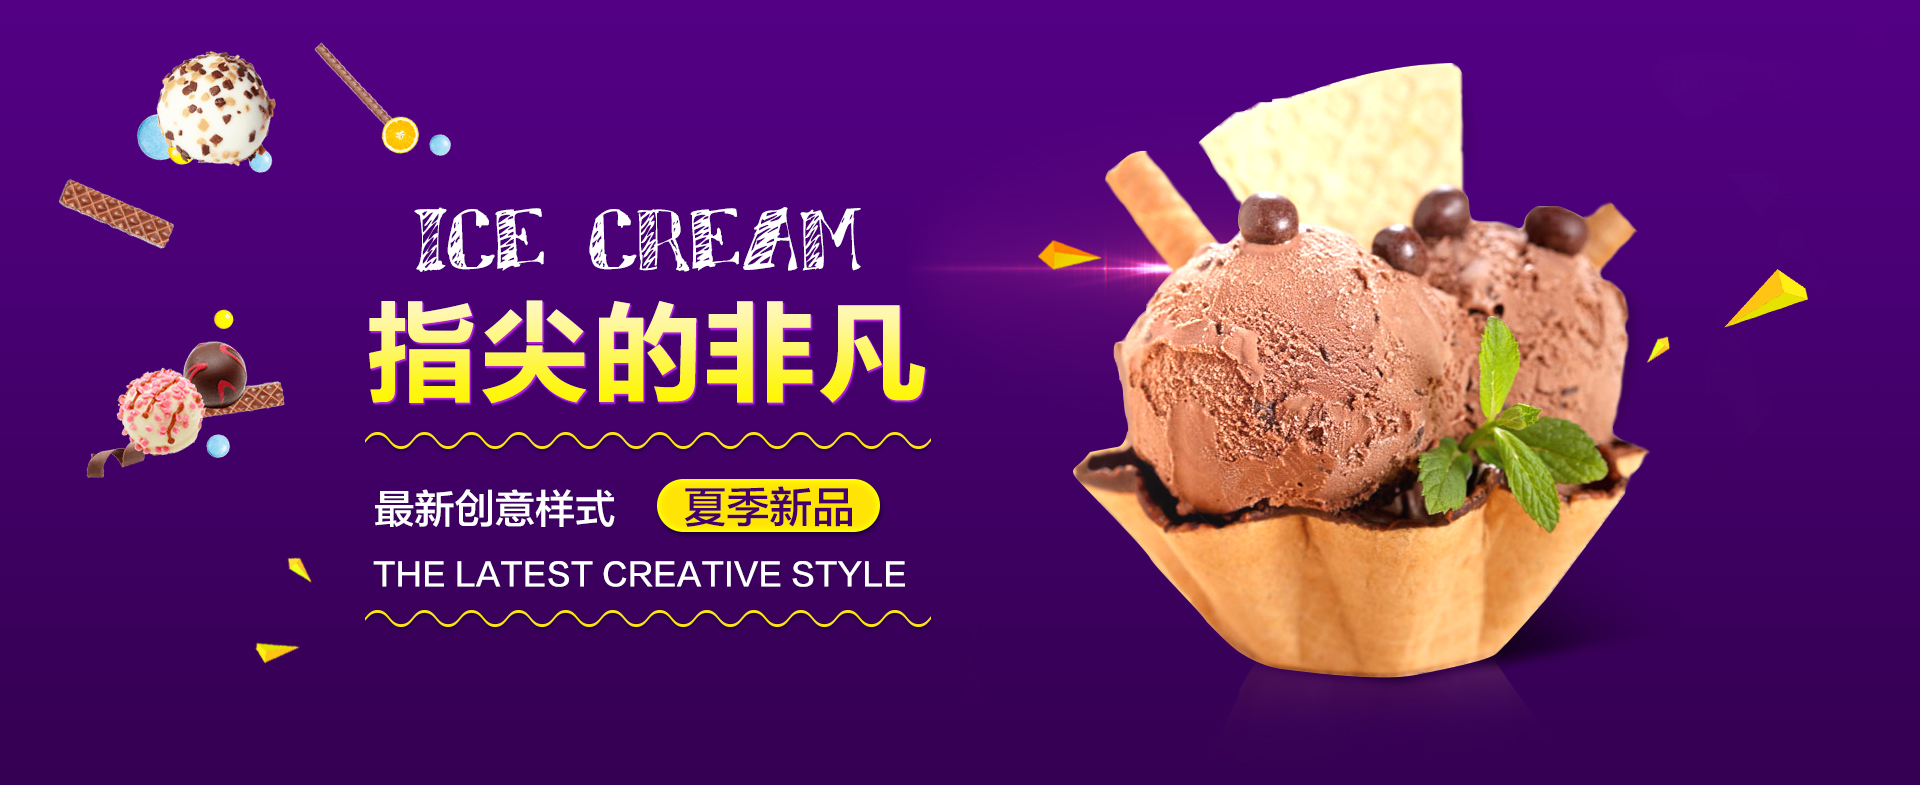 冰淇淋官网banner设计